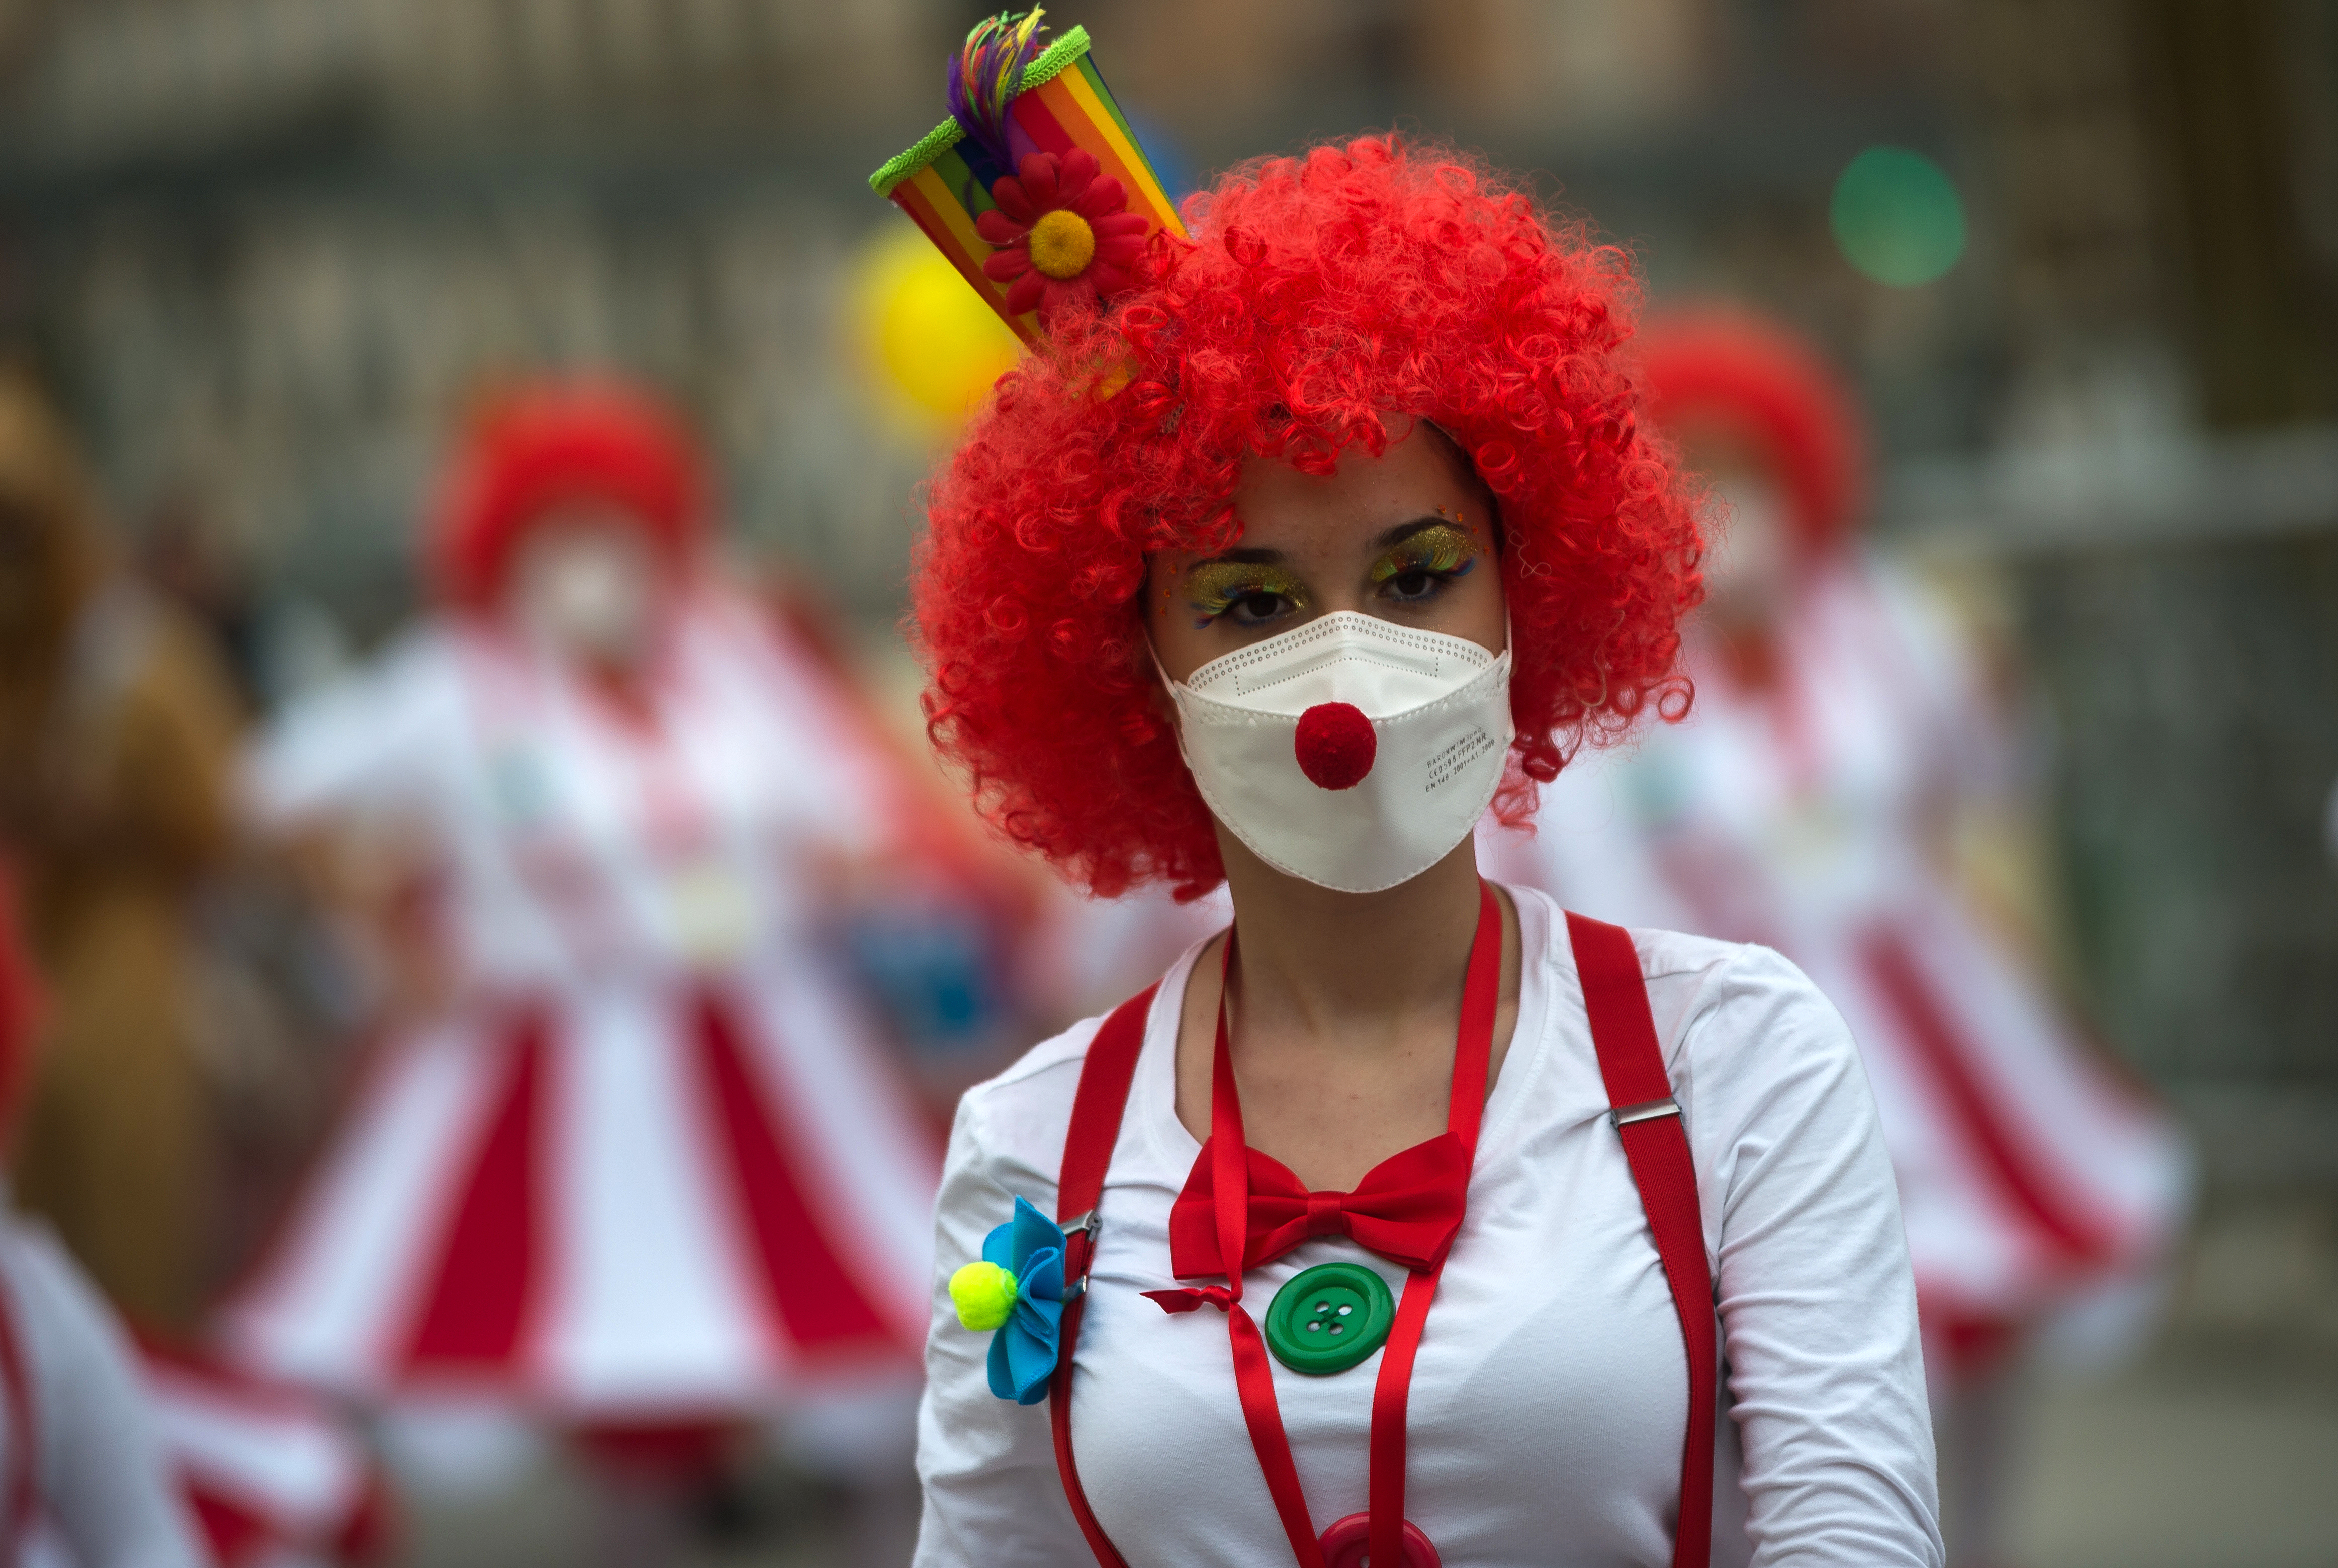 Eine als Clown verkleidete Frau. | Quelle: Getty Images